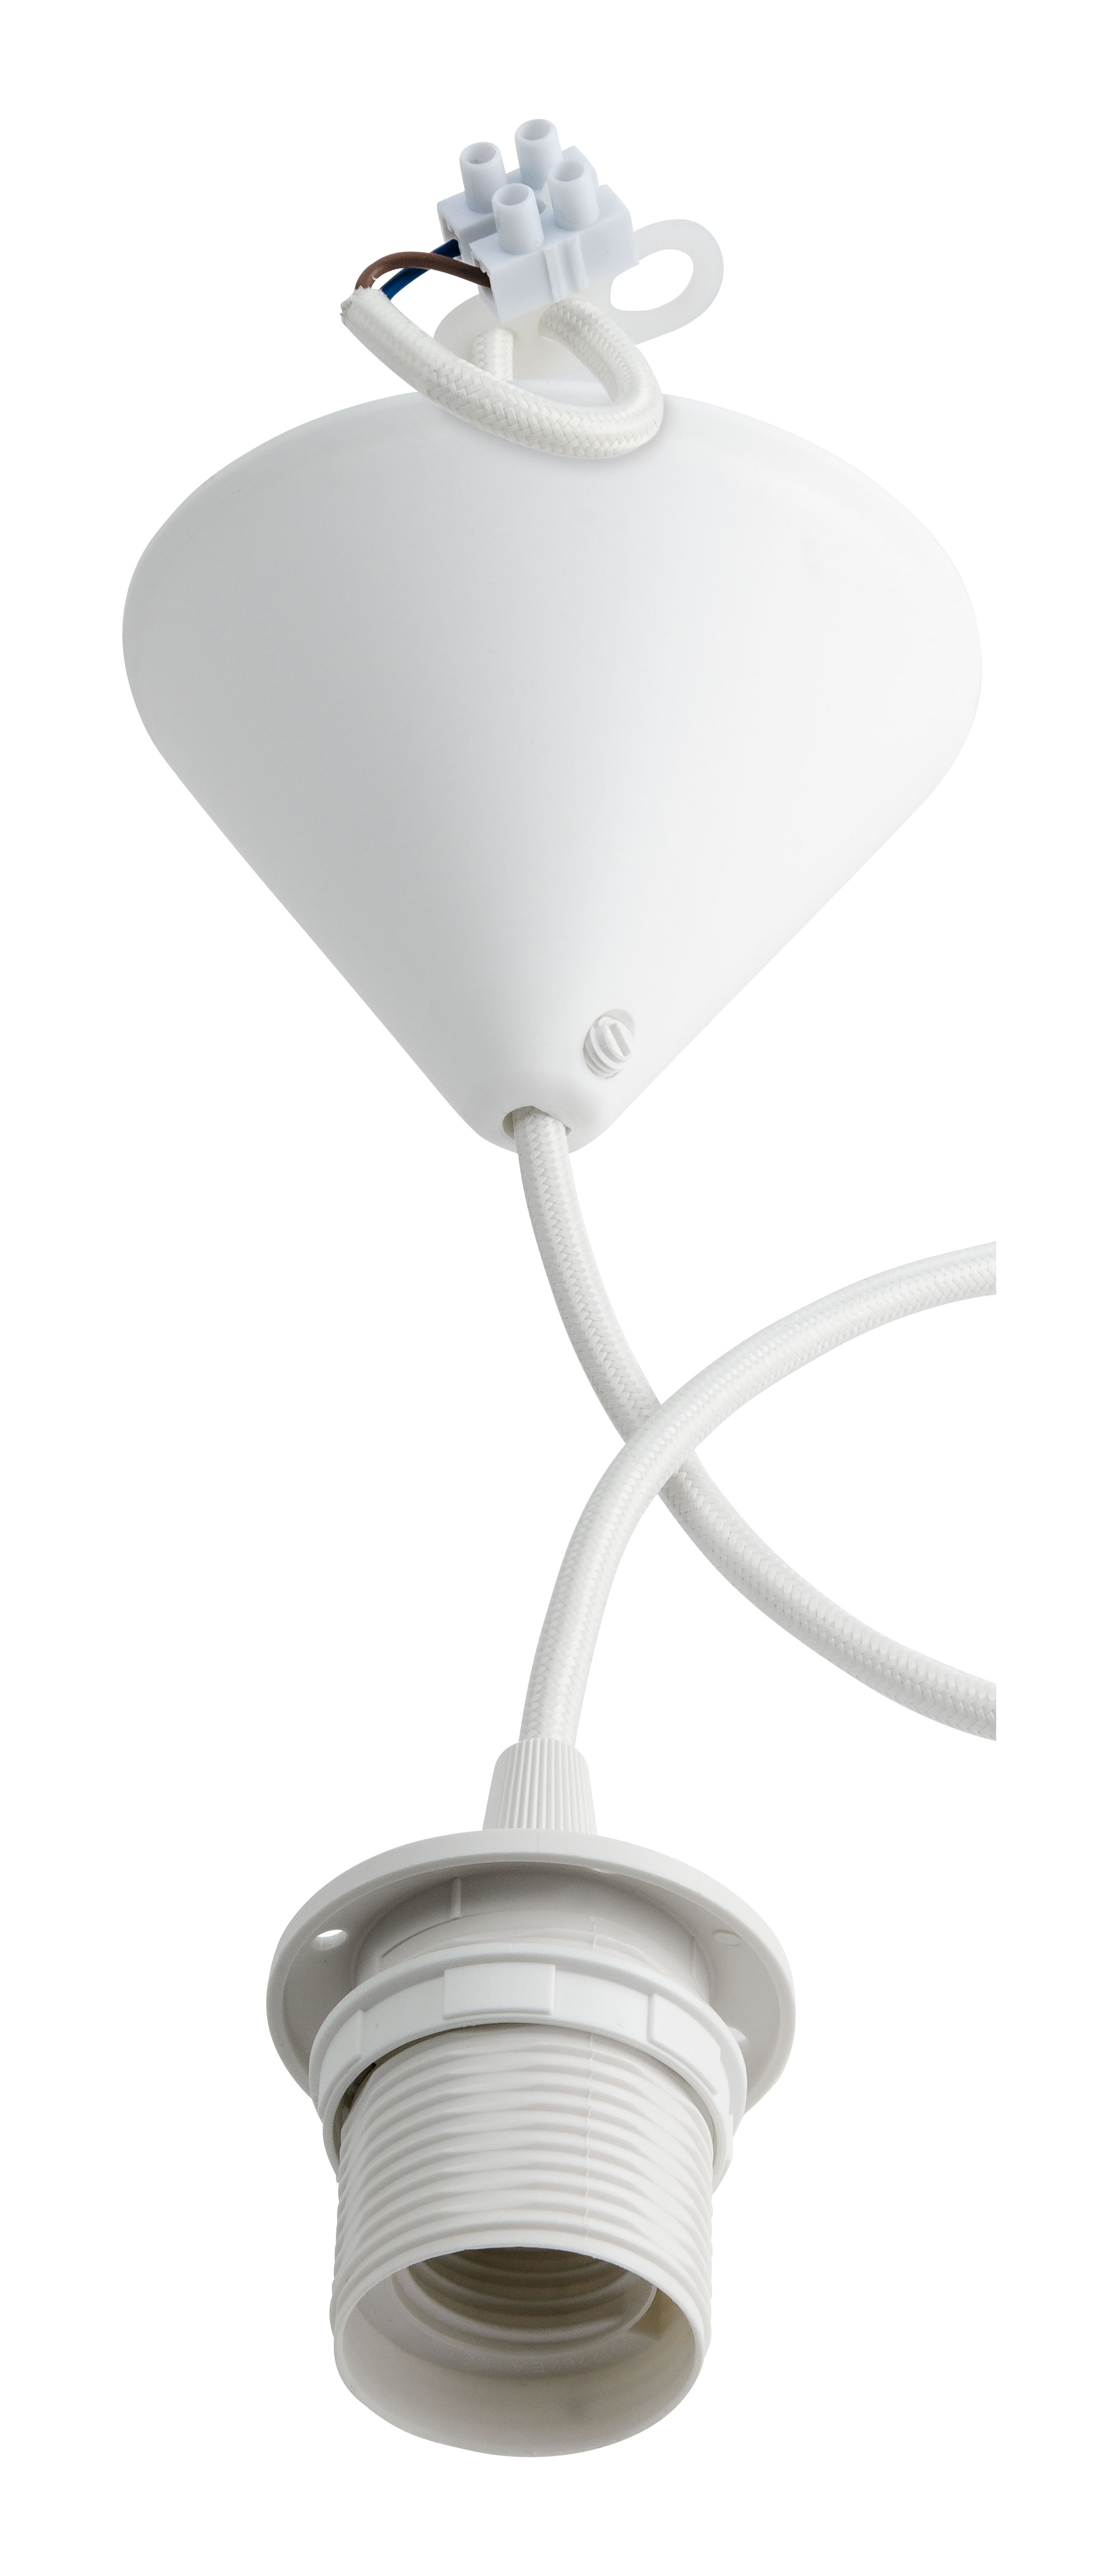 Billiga Lampupphäng med textilkabel och takkåpa, plast online på nätet